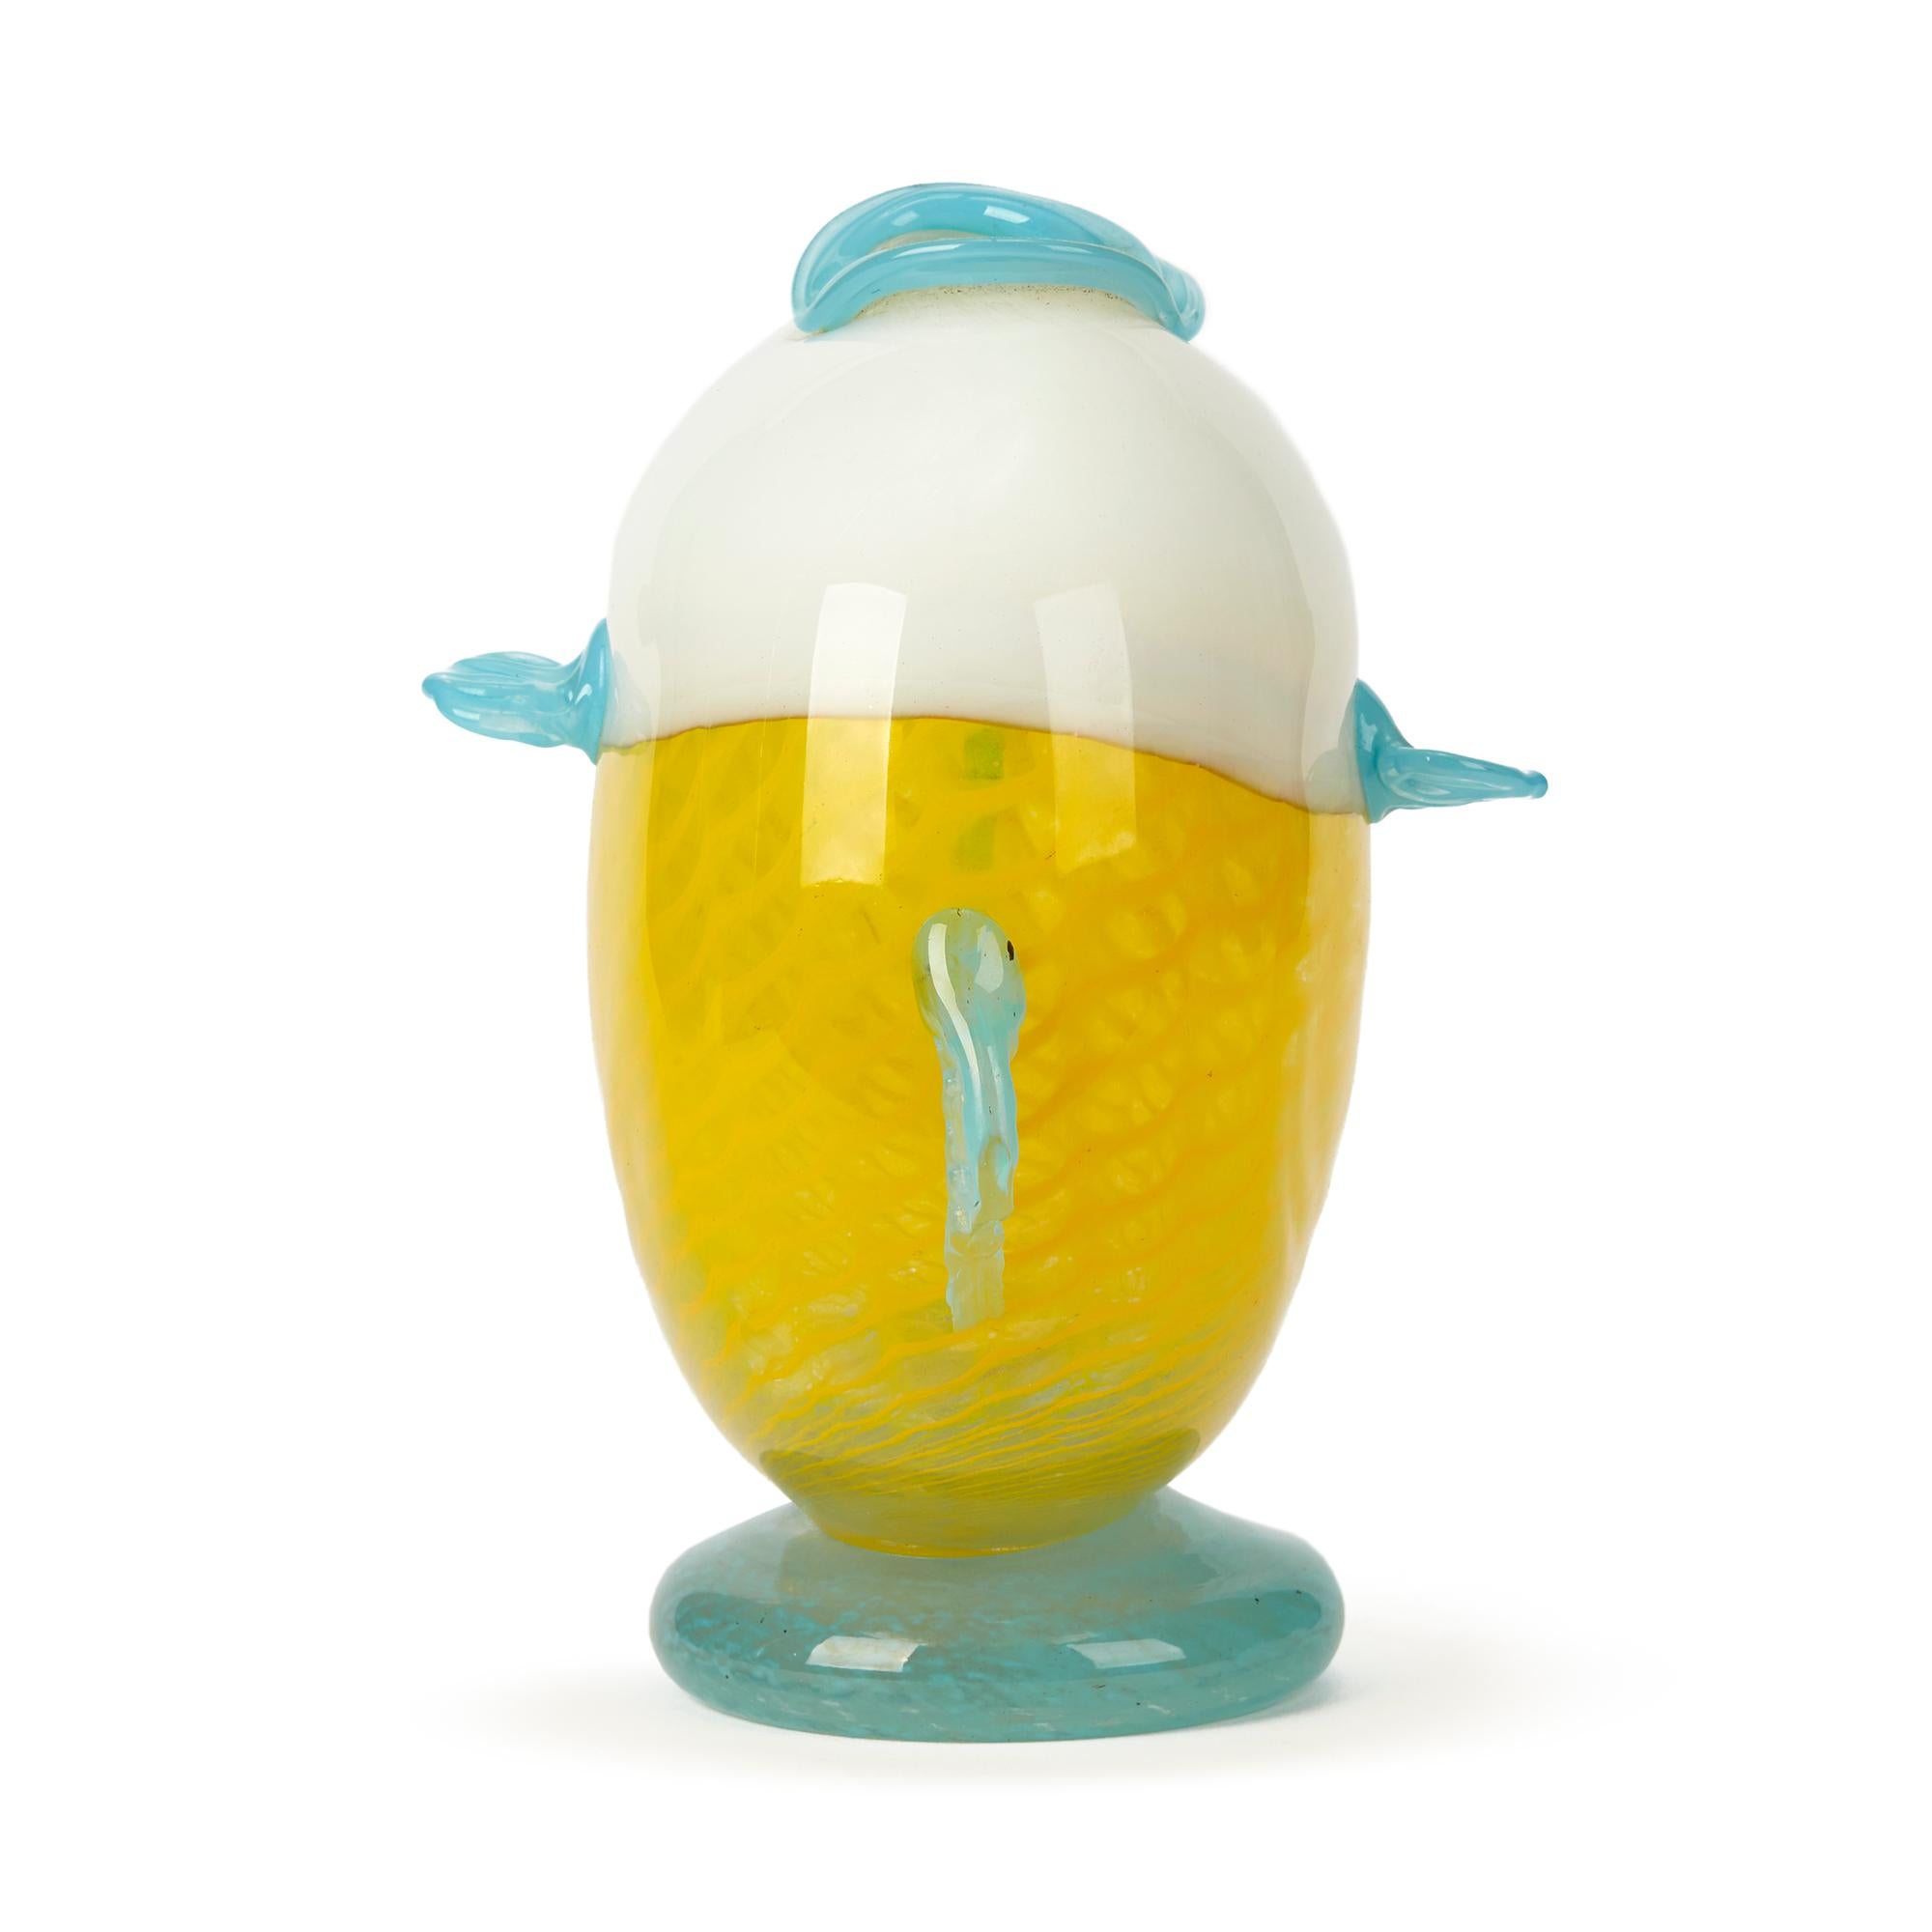 Eine ungewöhnliche Murano zugeschriebene Kunstglasvase in Form eines Kugelfisches. Die Vase hat einen flachen, runden Körper aus weißem und gelbem Schuppenglas mit aufgesetzten Augen und blauen Glasflossen und Lippen, die den oberen Teil der Vase